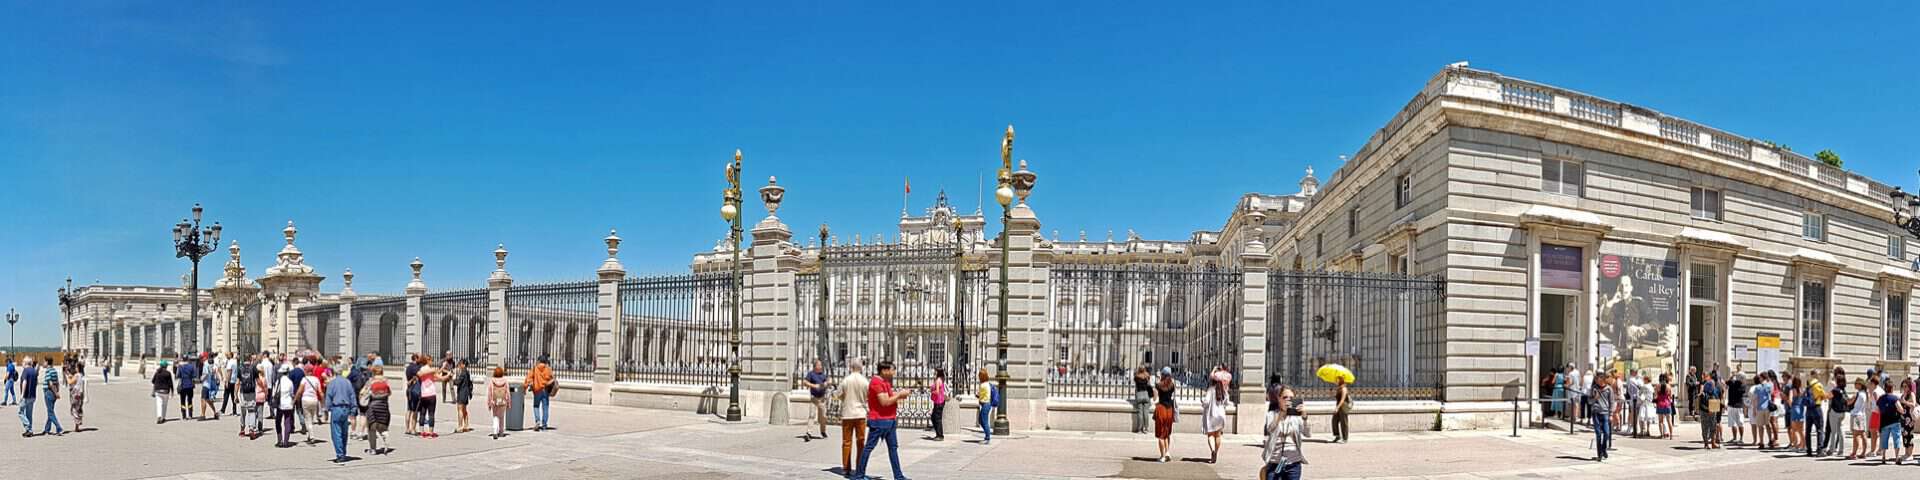 Cosa visitare a Madrid - Palacio Real de Madrid